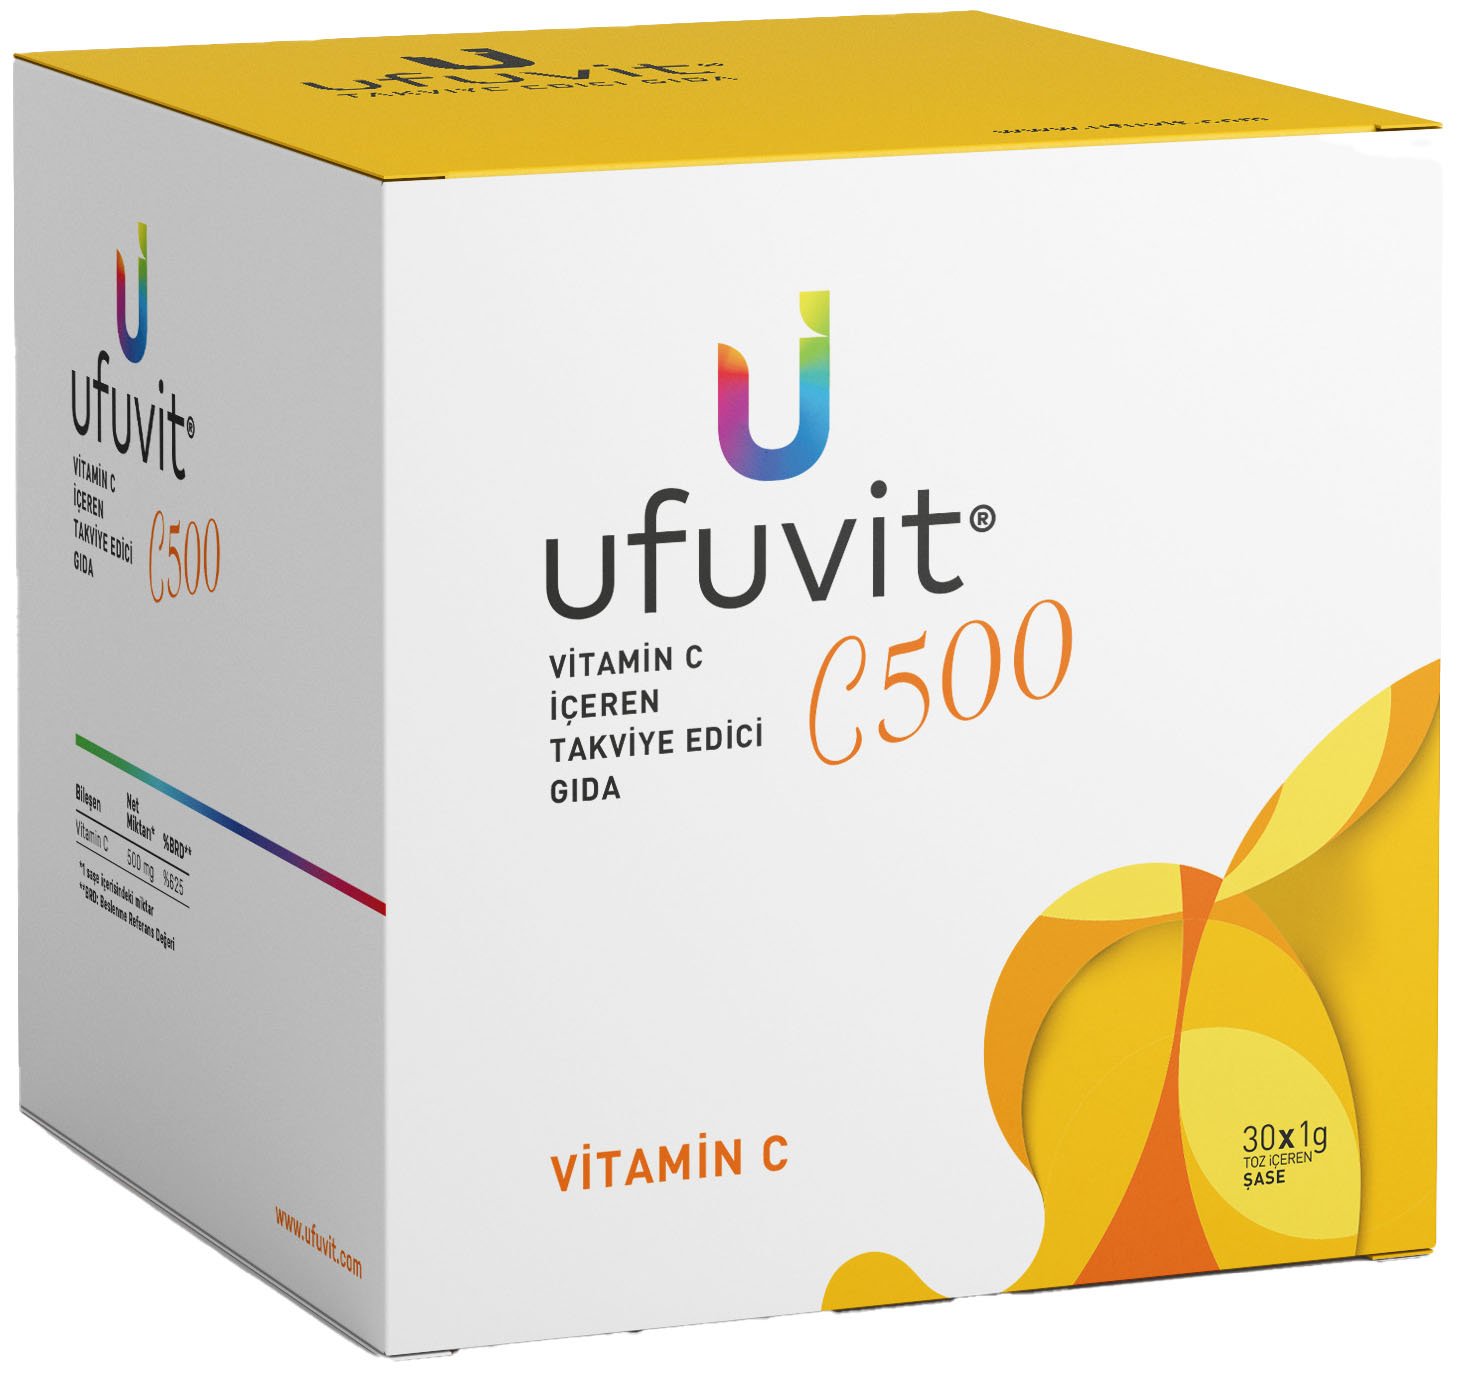 Ufuvit C500